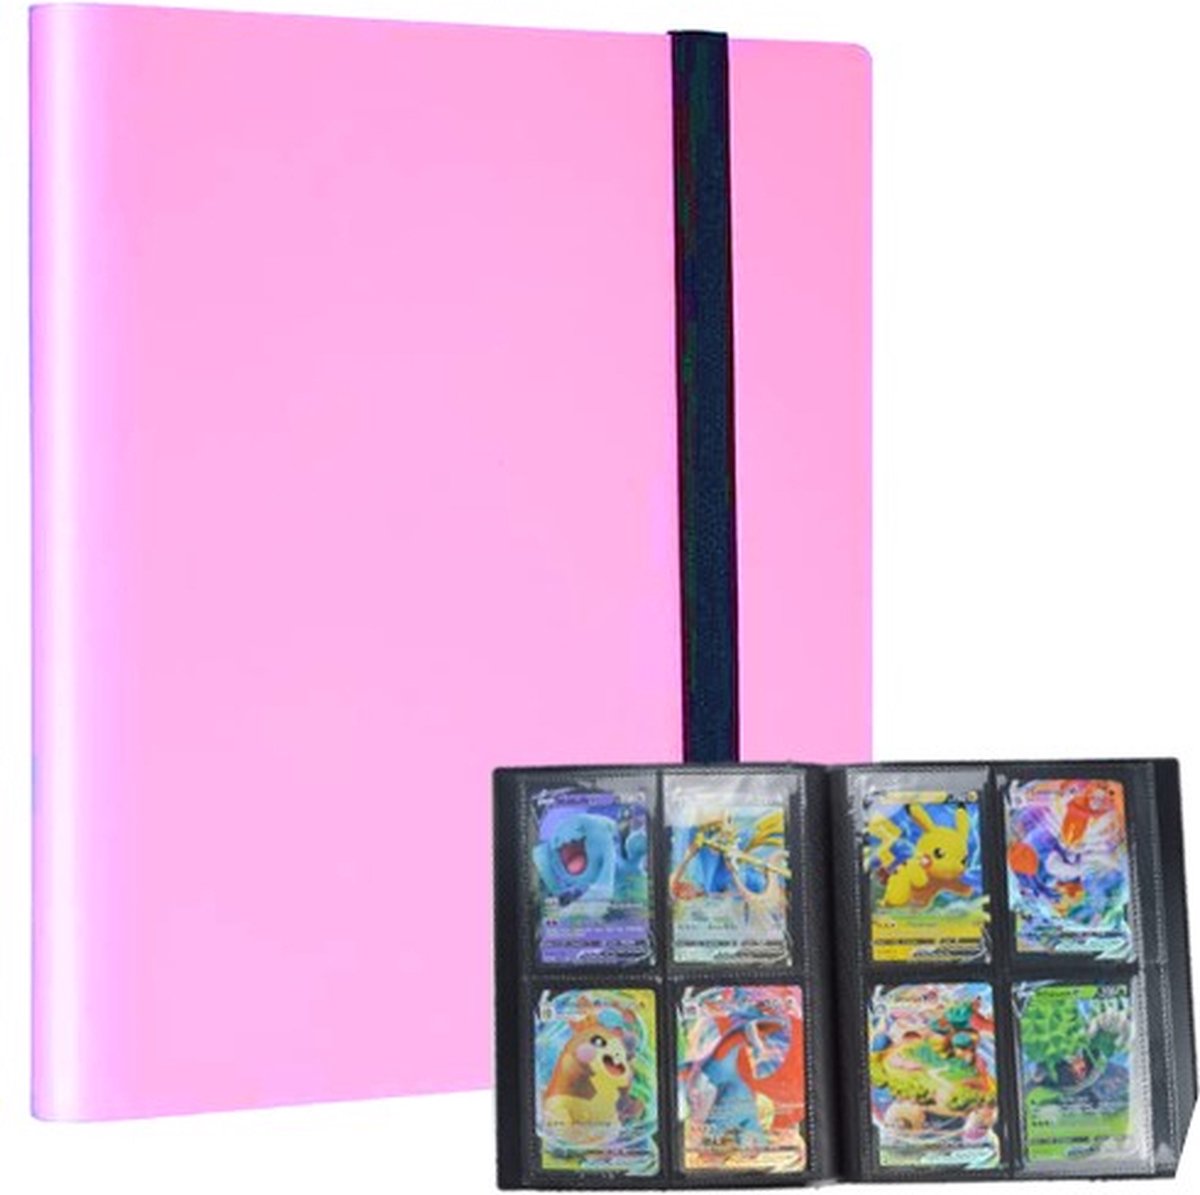 TradingCardPro - Roze verzamelmap geschikt voor Pokémon - Map voor 160 Kaarten - 20 Pagina’s - 4 Pocket - A5 Formaat - Premium Kwaliteit - Box - Binder Roze